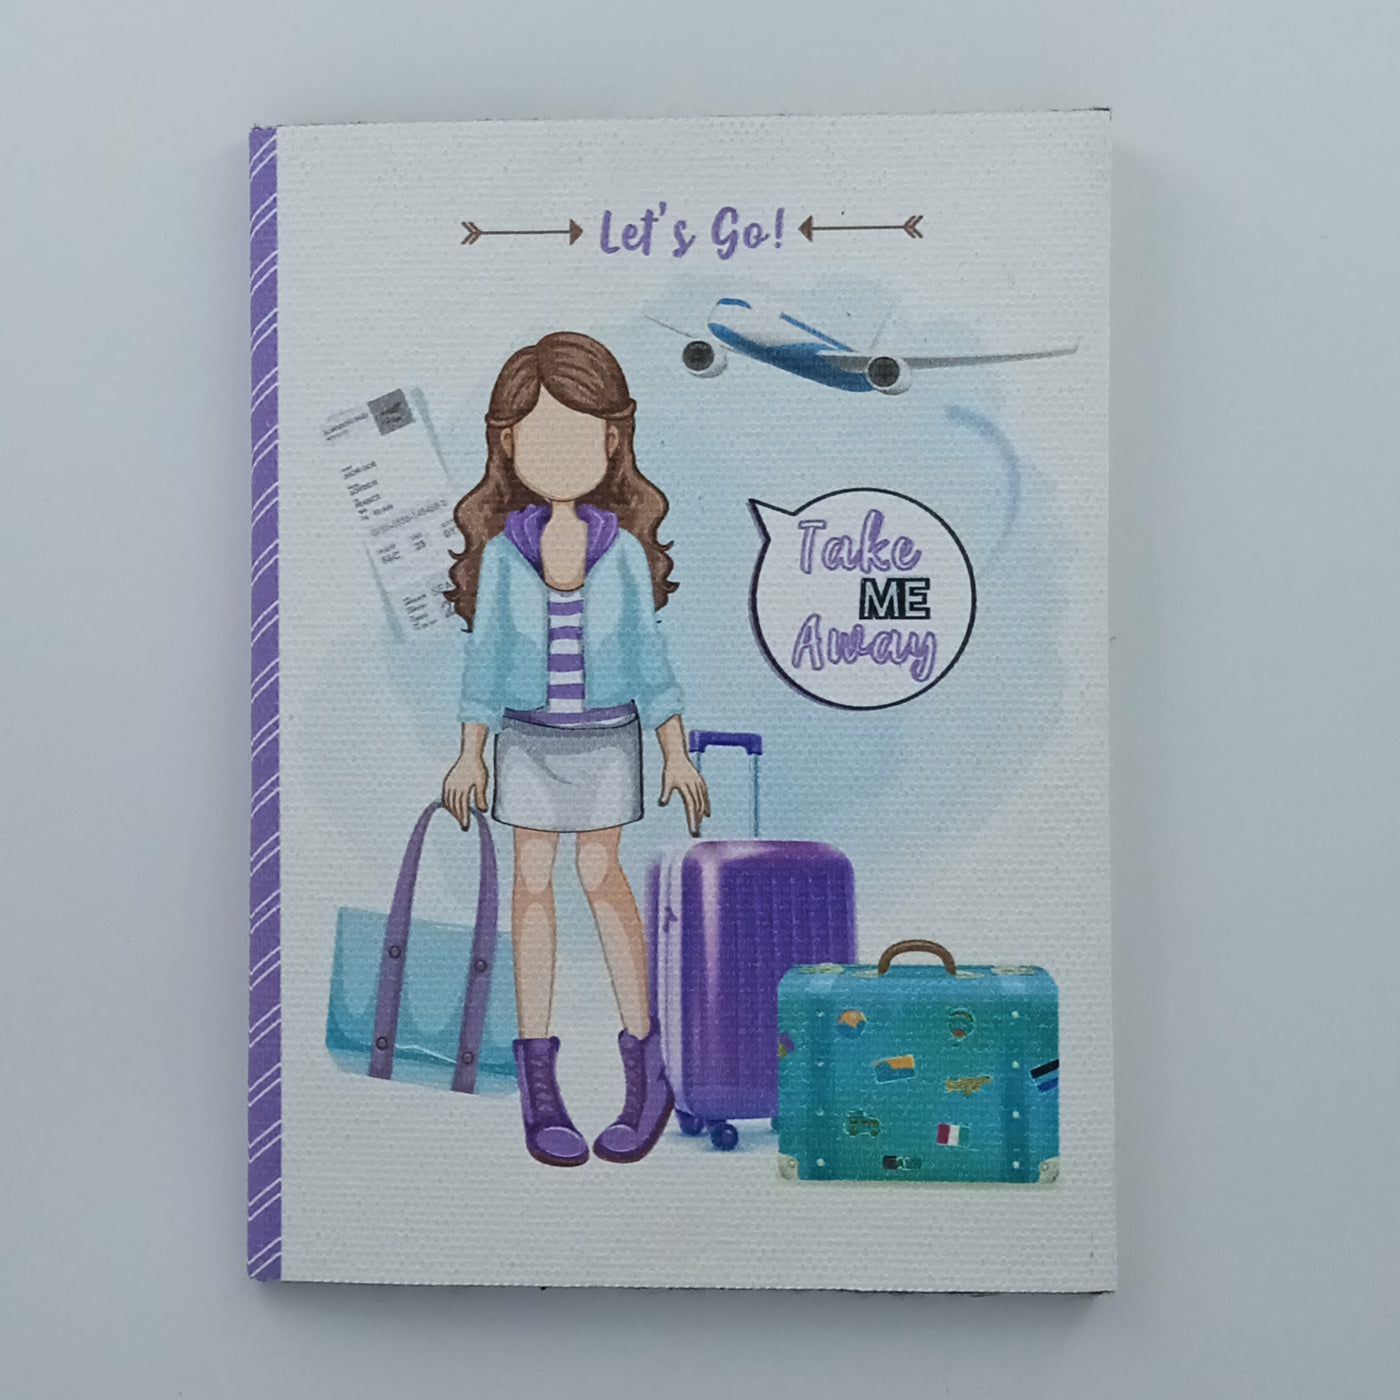 Cotton Canvas Traveller Chic Passport Cover - Purple & Mint